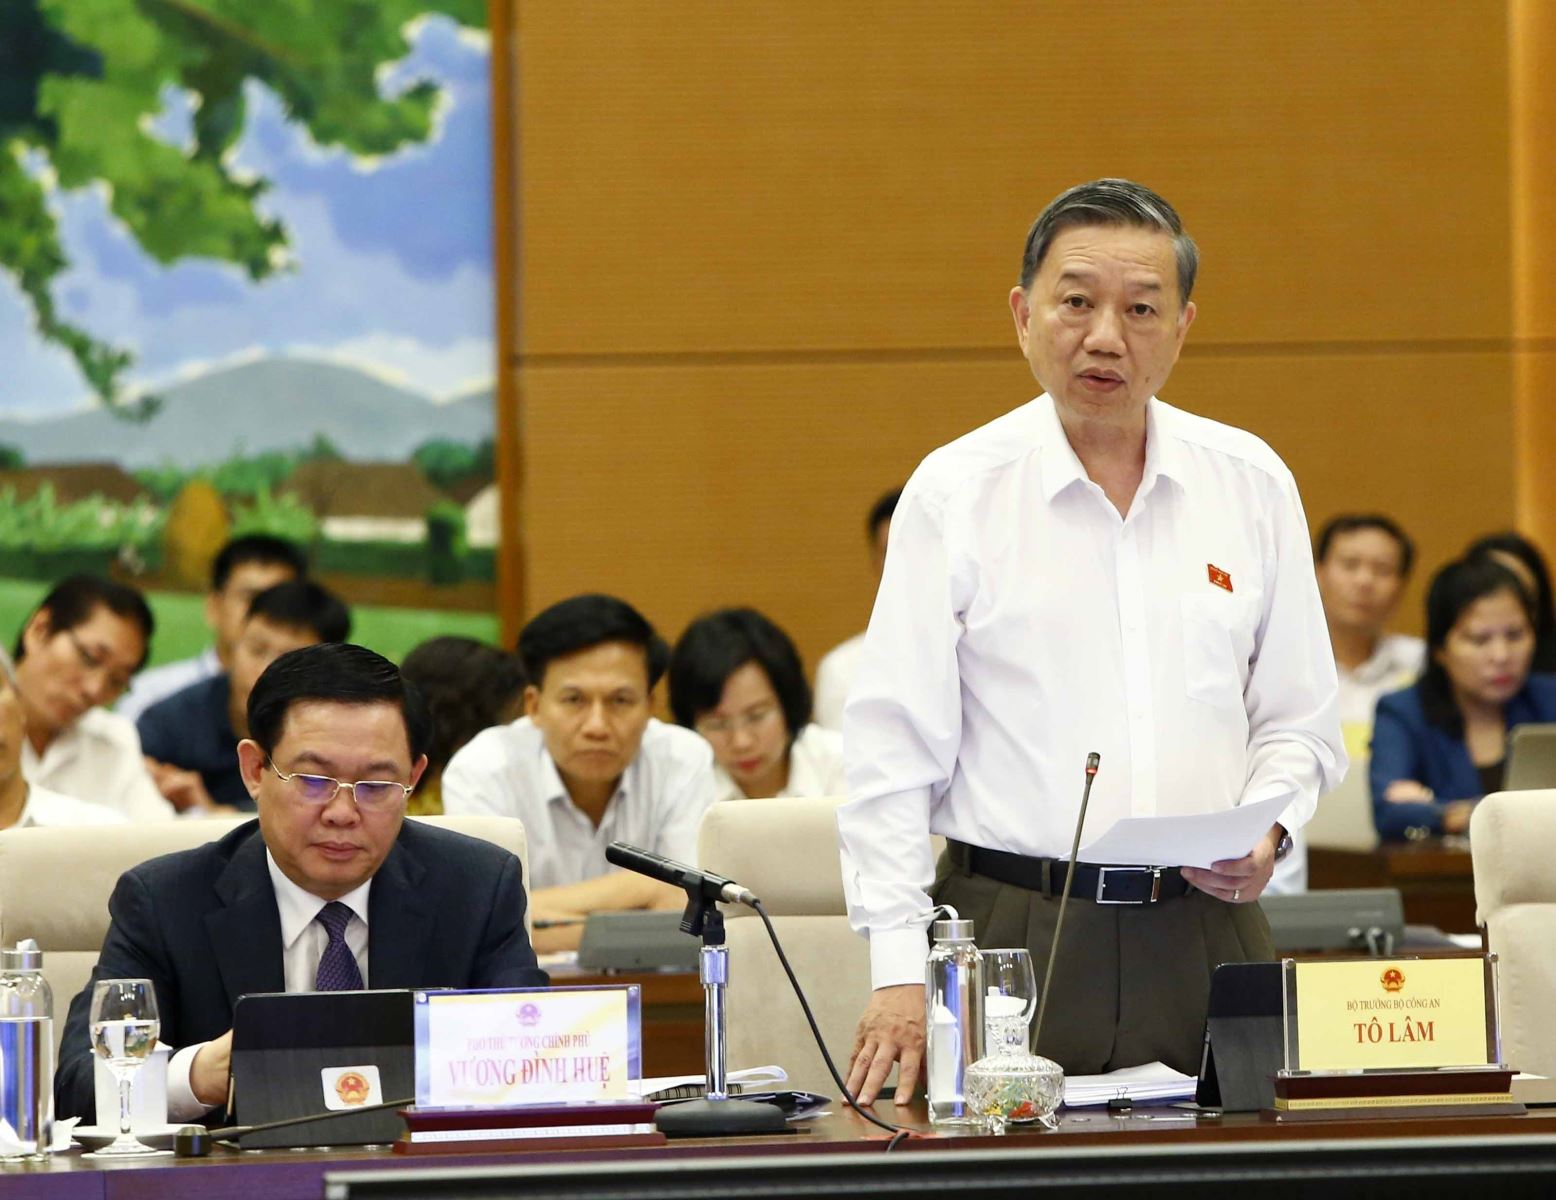 Đại tướng Tô Lâm, Bộ trưởng Bộ Công an trả lời chất vấn đại biểu Quốc hội, chiều 15-8. Ảnh: TTXVN